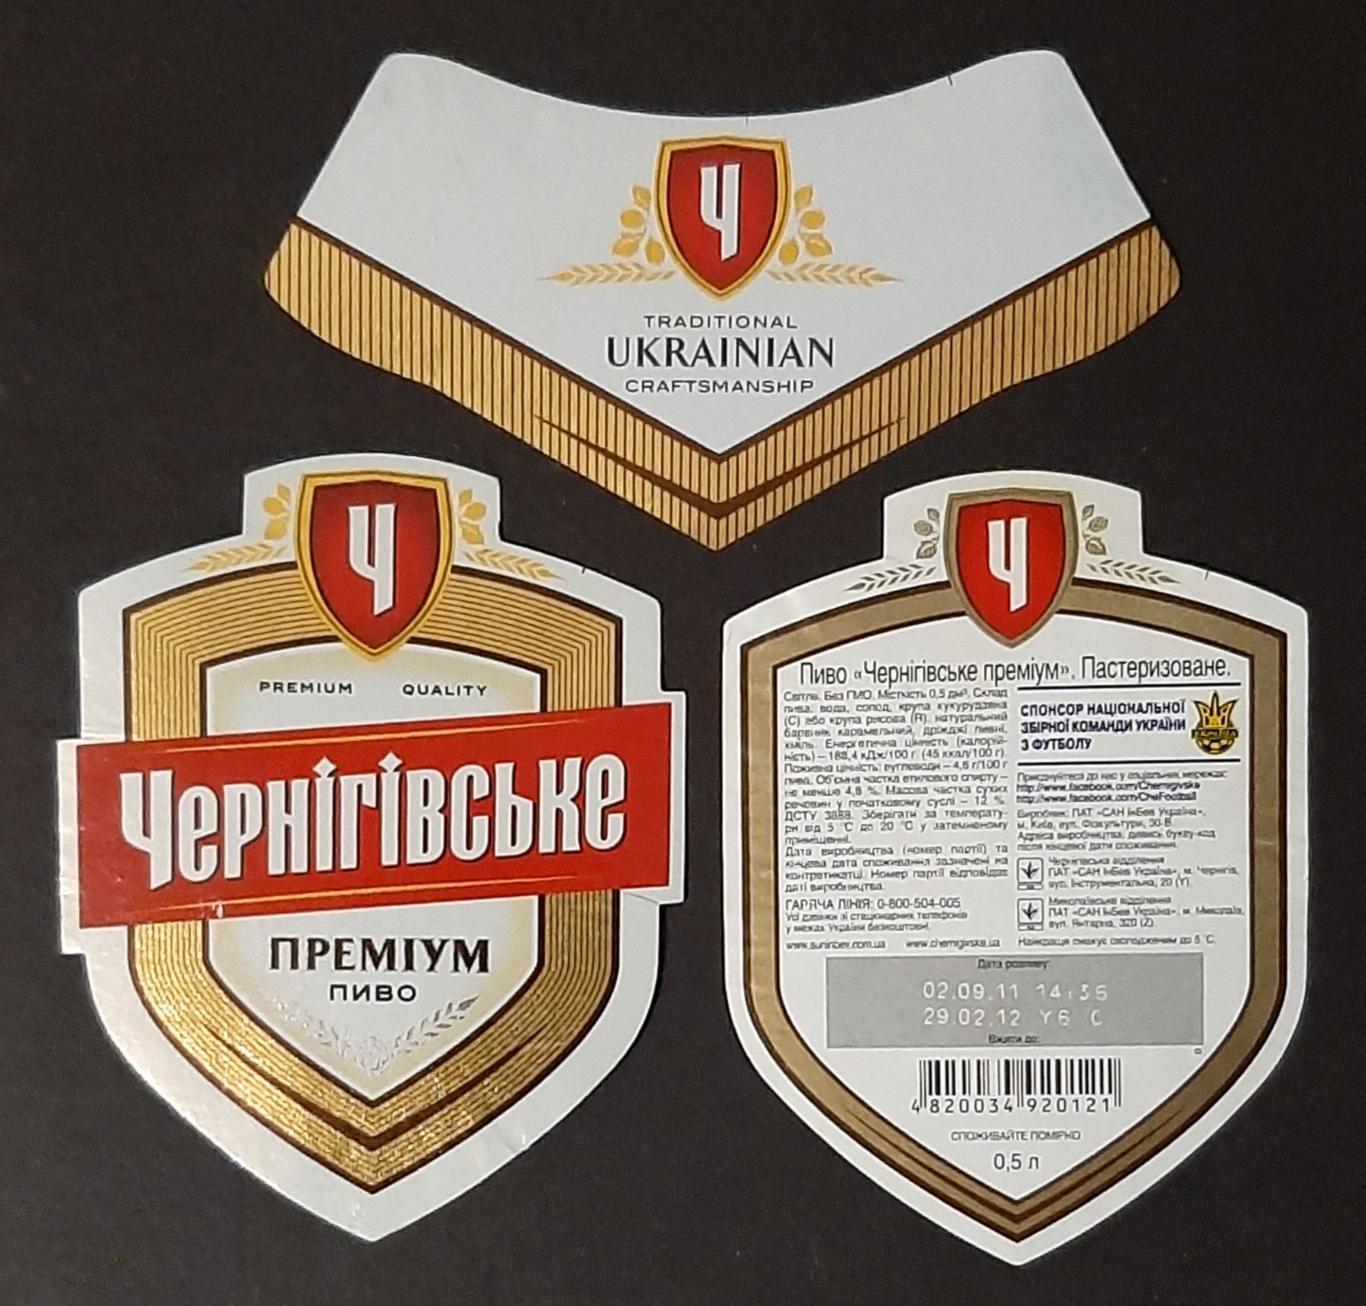 Пивна етикетка Чернігівське преміум